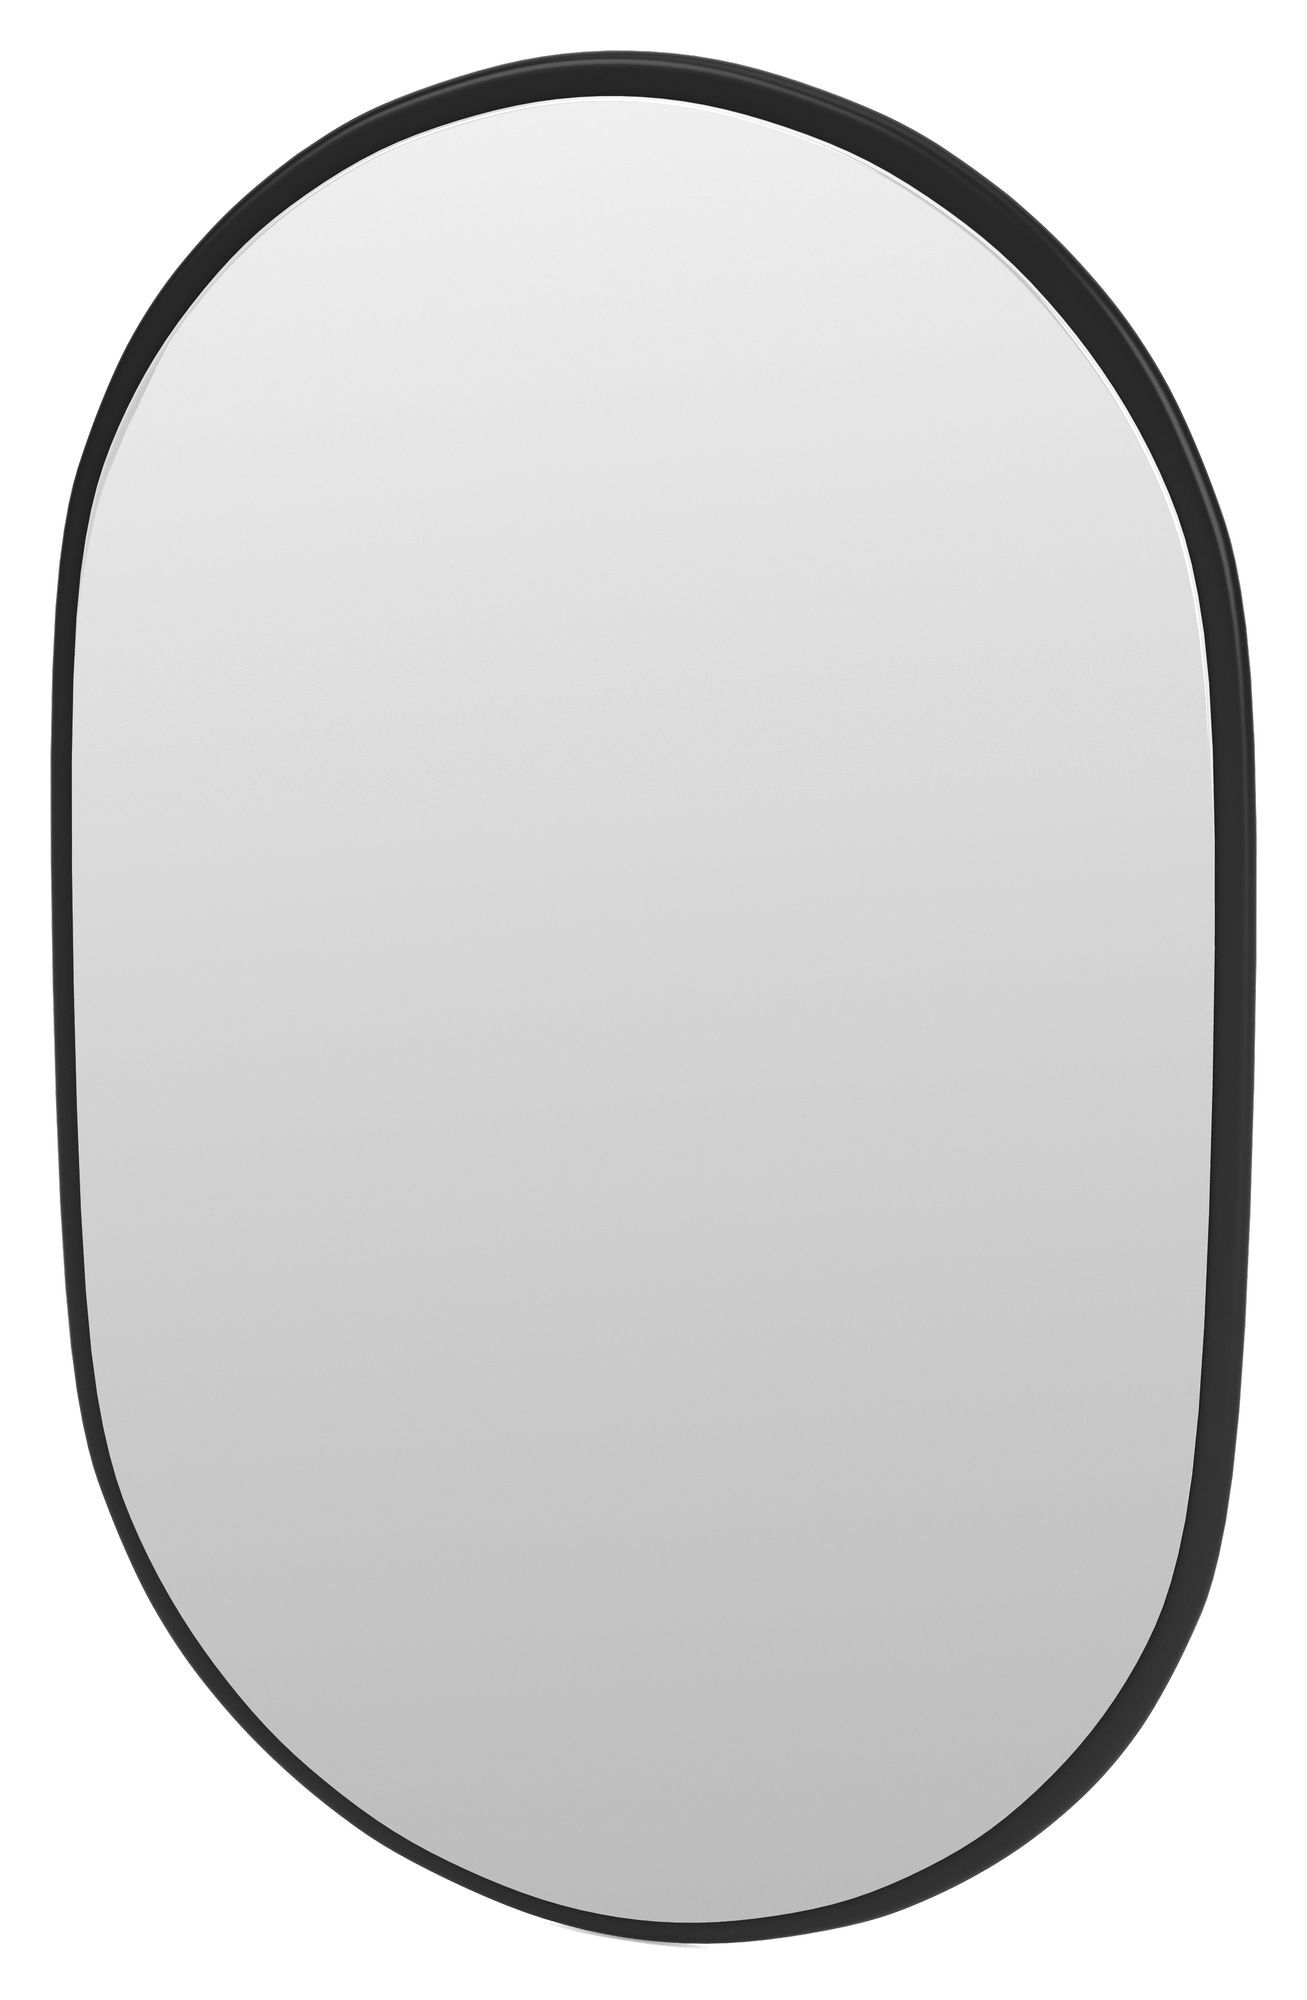 Montana LOOK Ovalt speil, 05-Black   Unoliving